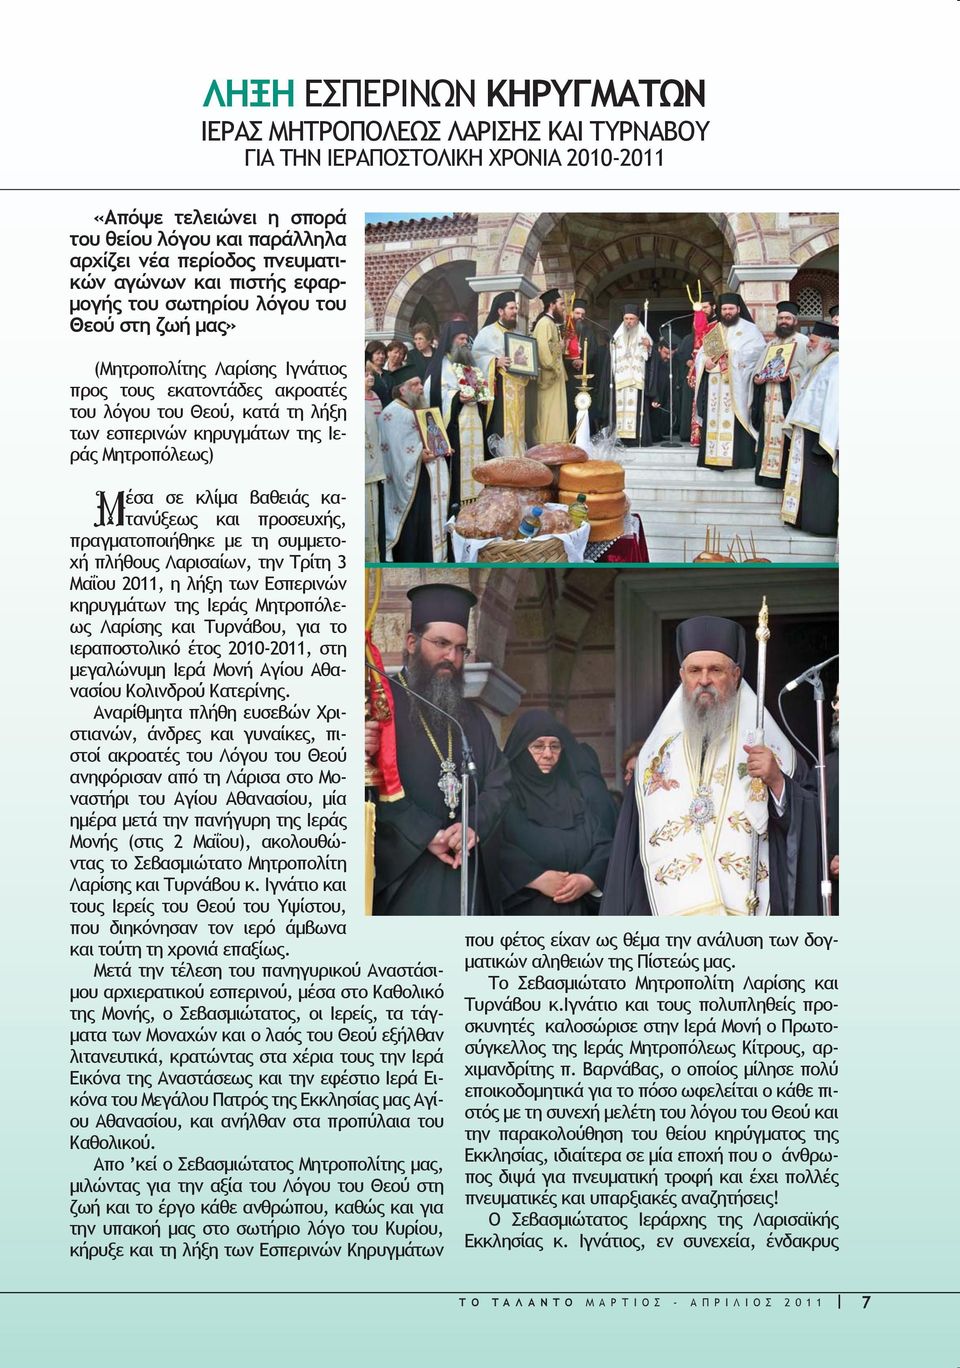 Μητροπόλεως) Μέσα σε κλίμα βαθειάς κατανύξεως και προσευχής, πραγματοποιήθηκε με τη συμμετοχή πλήθους Λαρισαίων, την Τρίτη 3 Μαΐου 2011, η λήξη των Εσπερινών κηρυγμάτων της Ιεράς Μητροπόλεως Λαρίσης